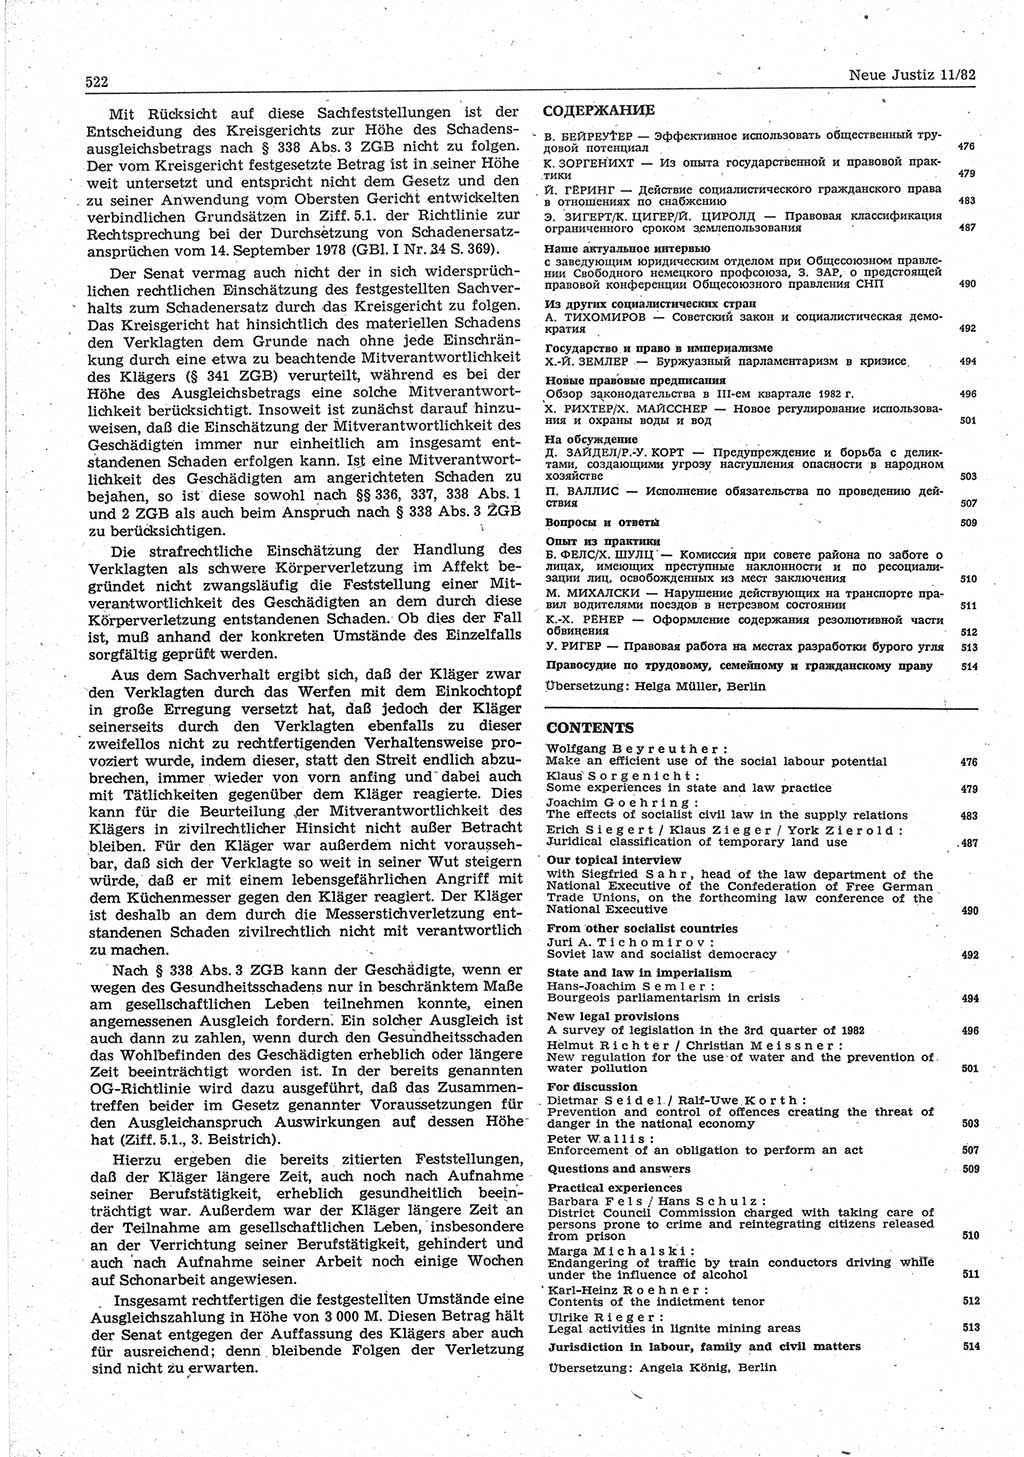 Neue Justiz (NJ), Zeitschrift für sozialistisches Recht und Gesetzlichkeit [Deutsche Demokratische Republik (DDR)], 36. Jahrgang 1982, Seite 522 (NJ DDR 1982, S. 522)